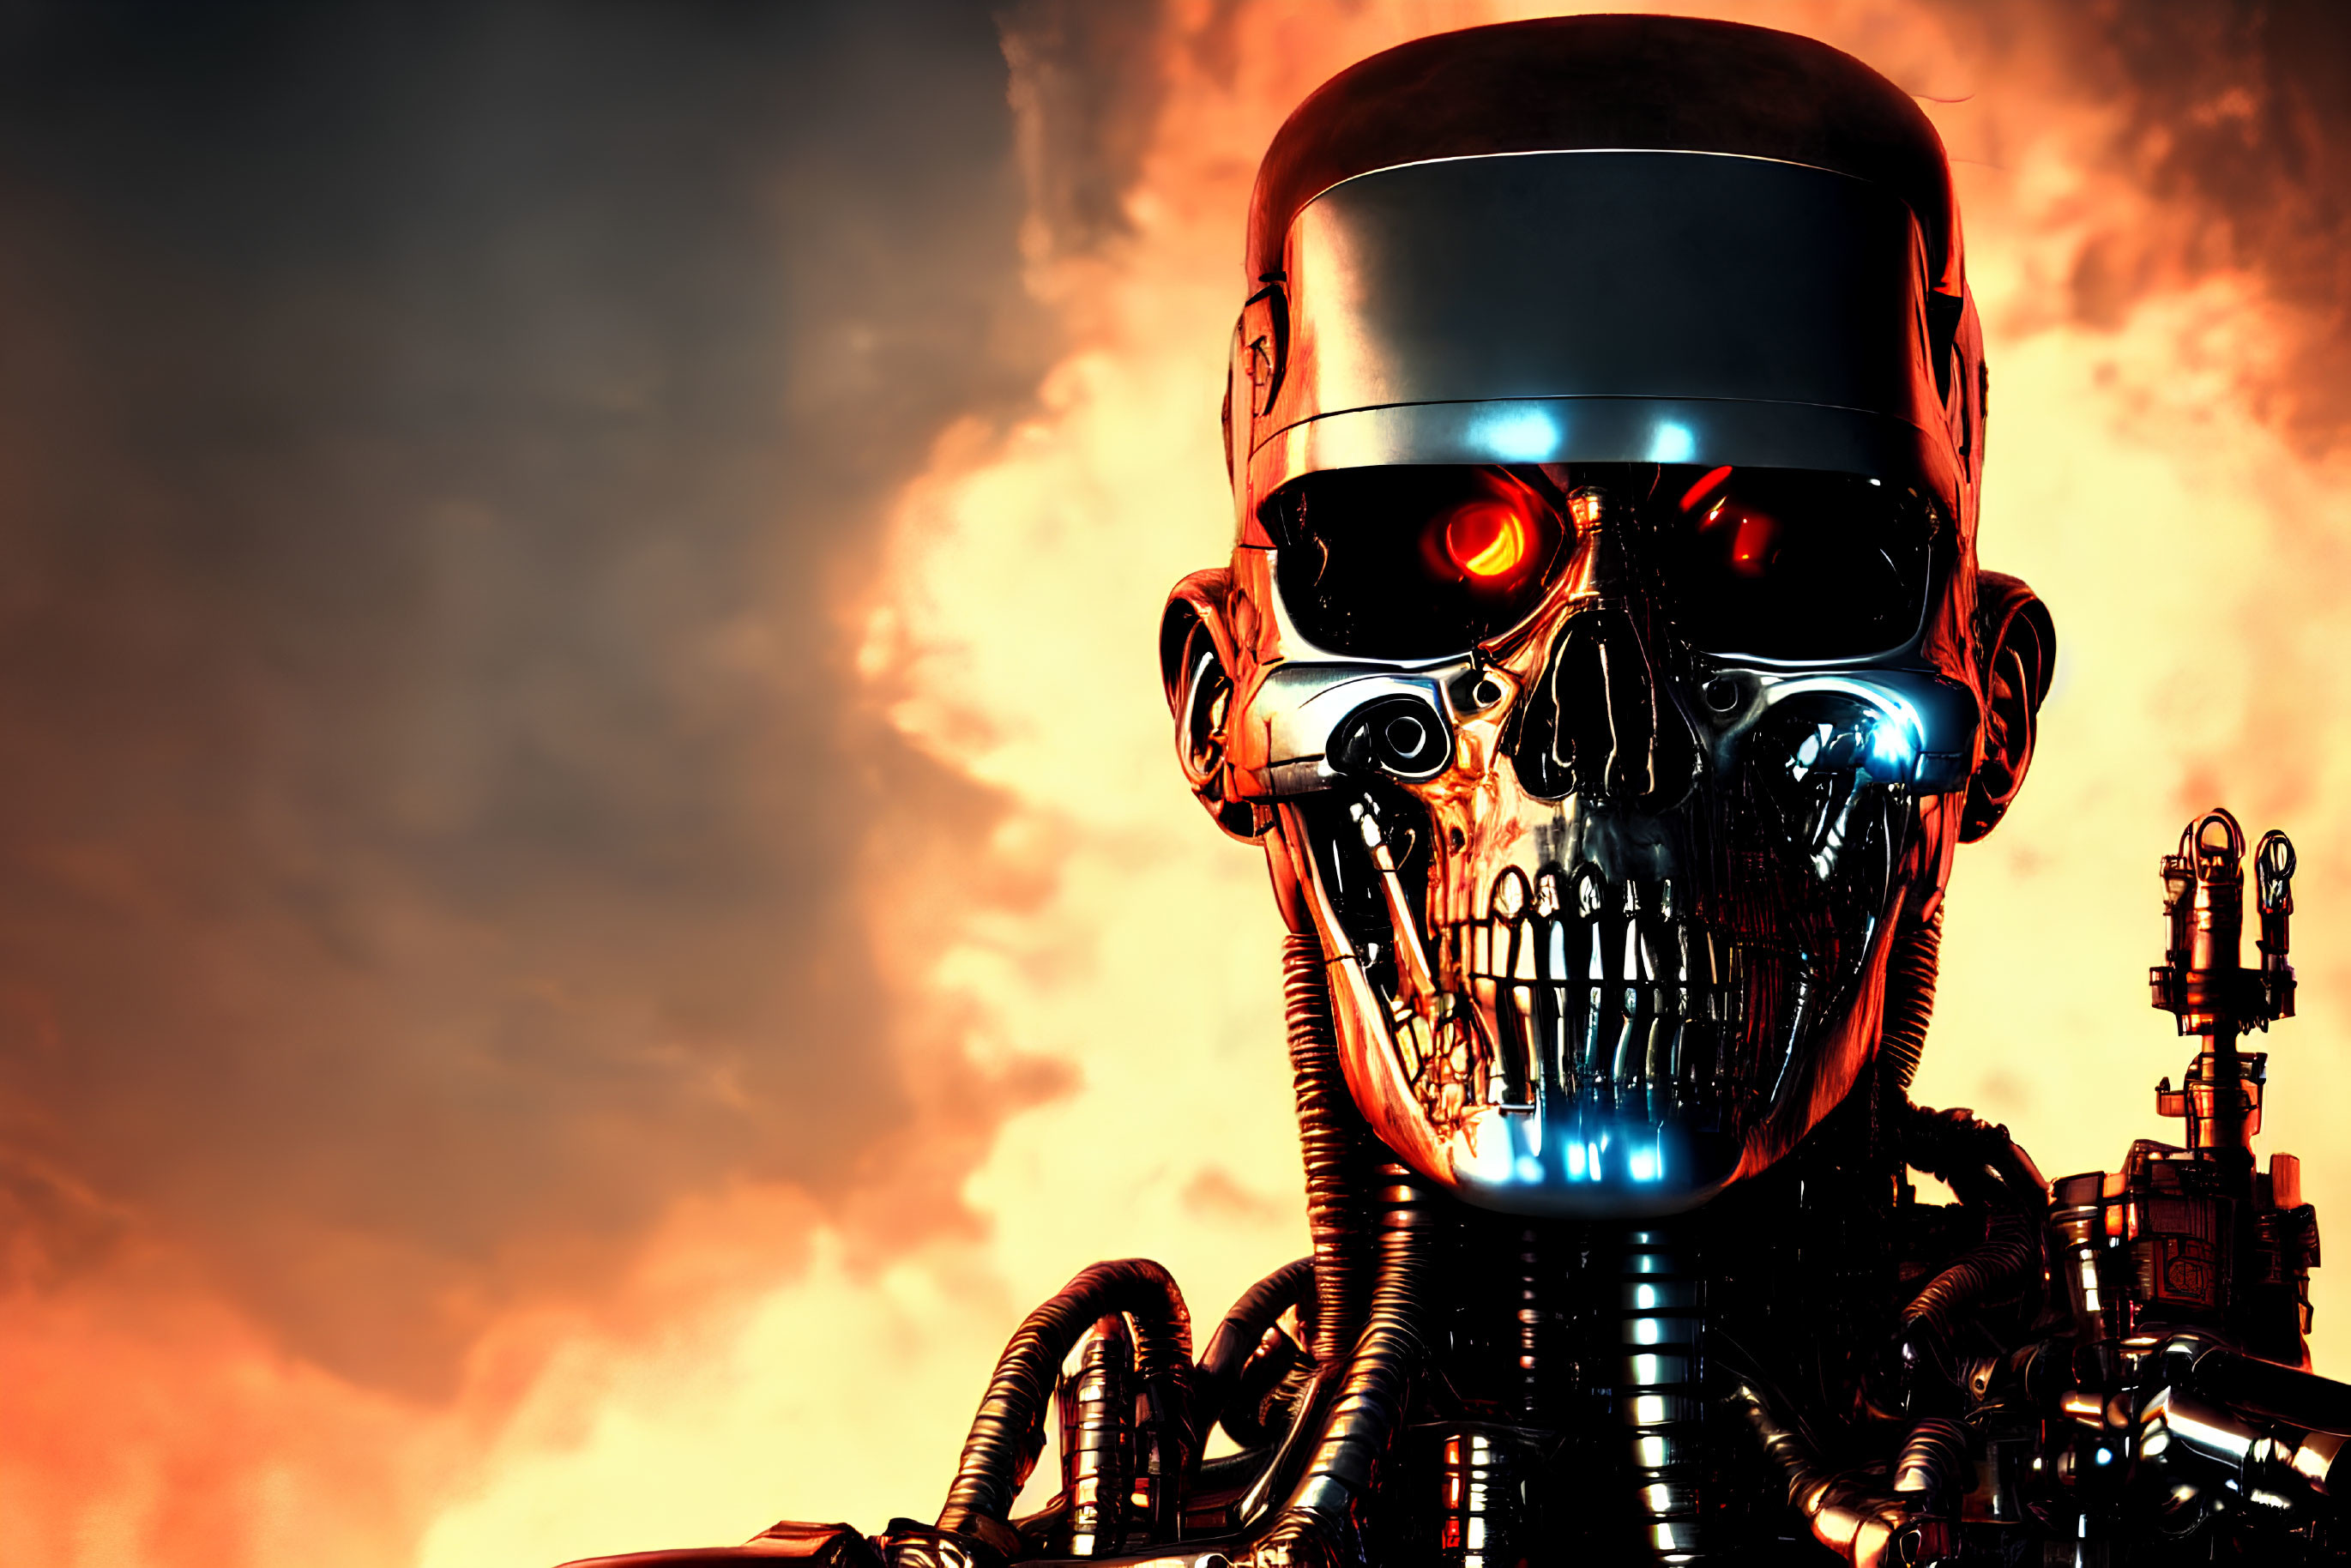 Metallic skull robot with red glowing eye in fiery sky